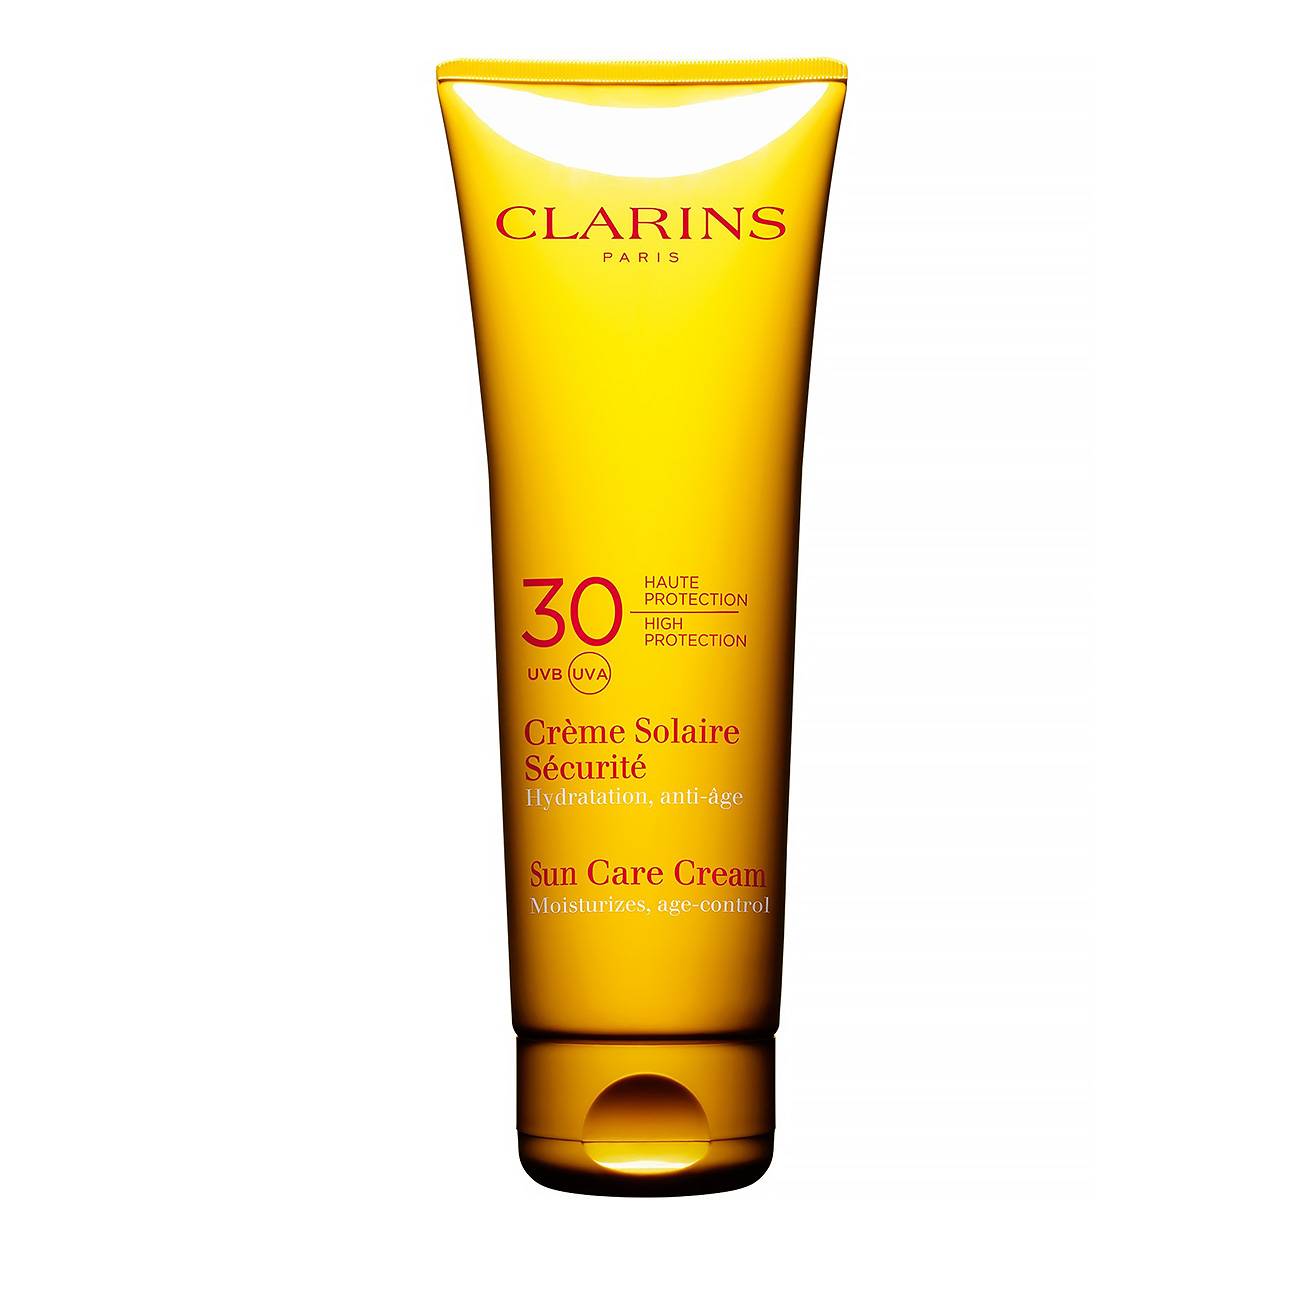 SUN CARE CREAM HIGH PROTECTION UVB/ UVA 30 125ml original Clarins bestvalue